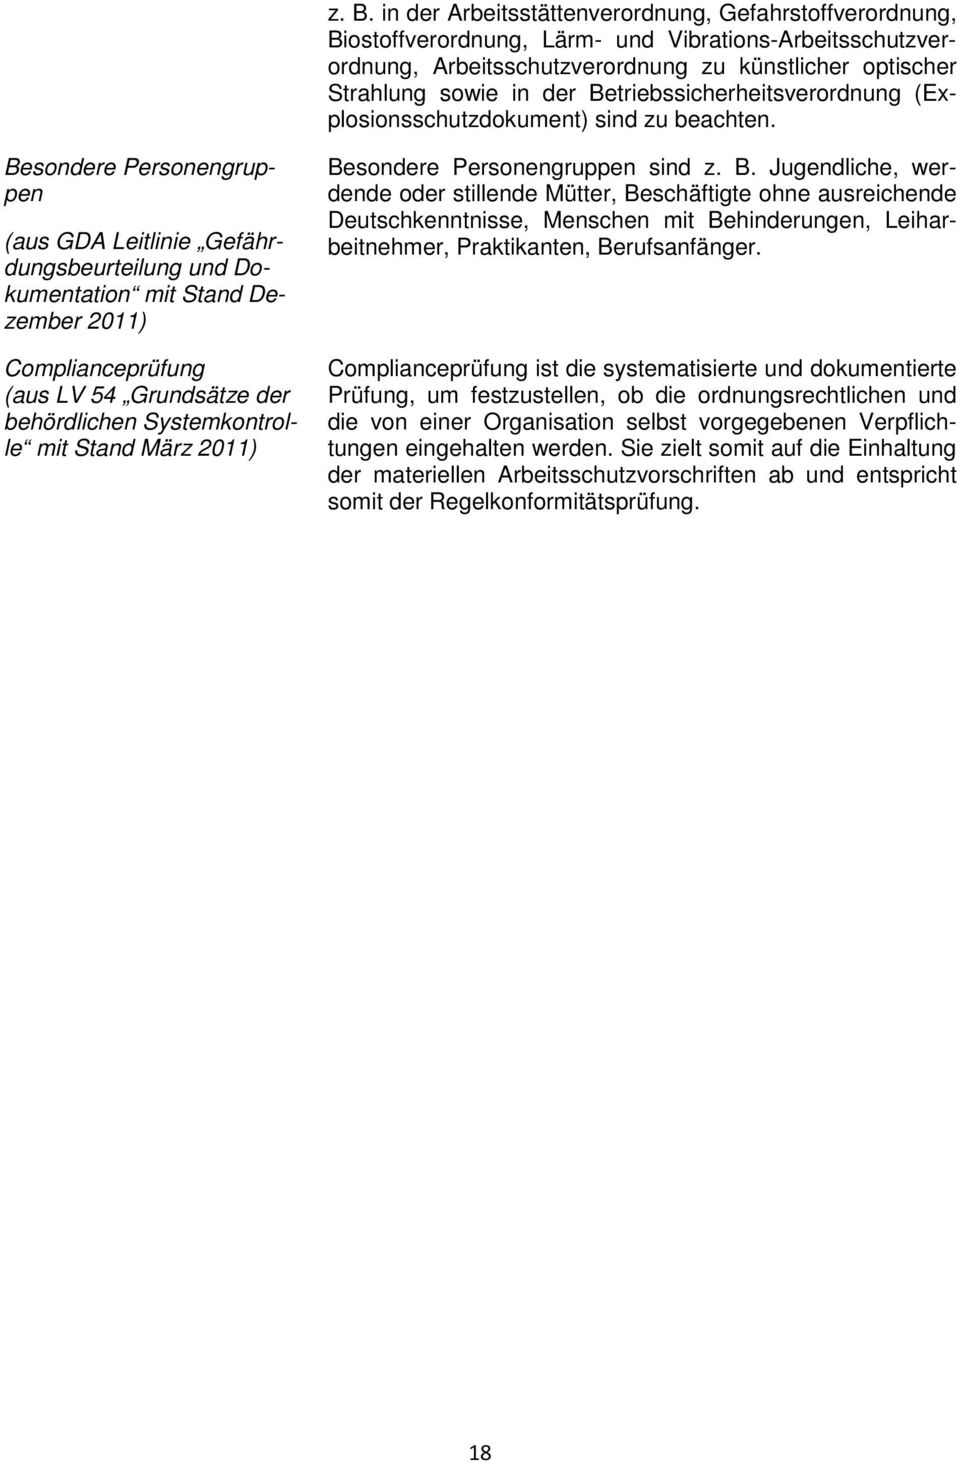 Besondere Personengruppen (aus GDA Leitlinie Gefährdungsbeurteilung und Dokumentation mit Stand Dezember 2011) Complianceprüfung (aus LV 54 Grundsätze der behördlichen Systemkontrolle mit Stand März